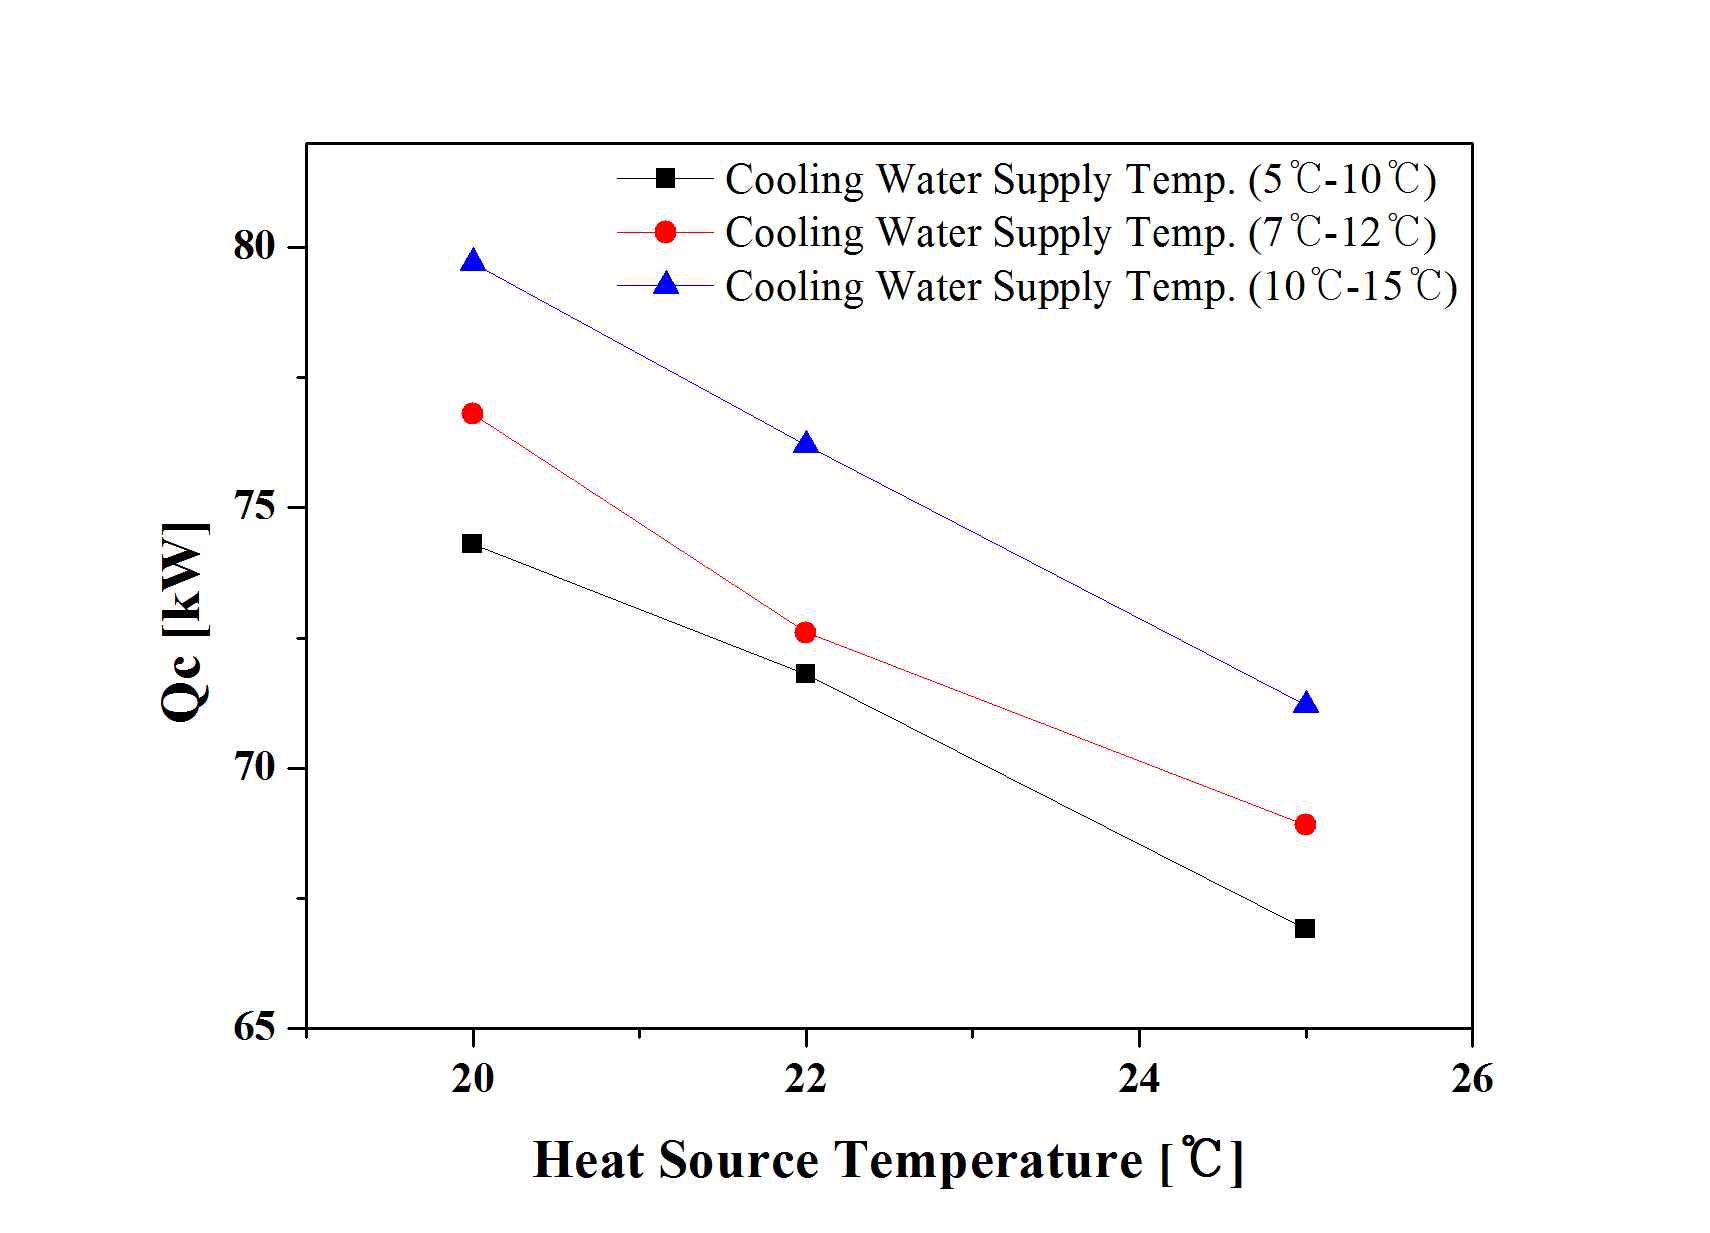 열원온도에 따른 냉방생산열량의 변화